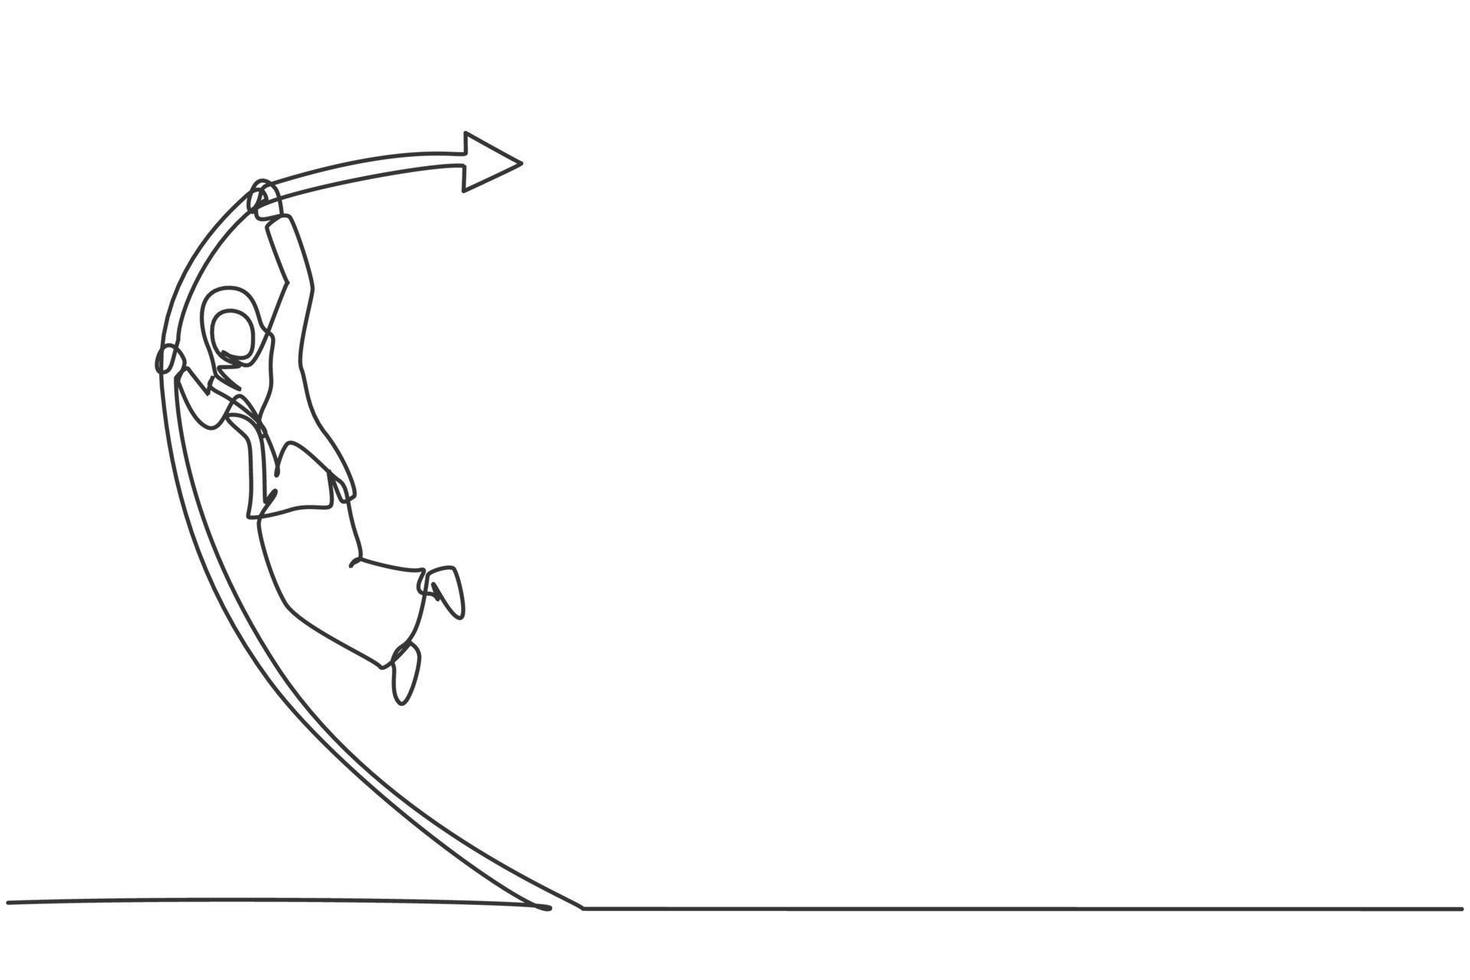 único desenho de linha de uma jovem empresária árabe pulando alto com salto com vara. conceito mínimo de metáfora de crescimento financeiro de negócios. linha contínua moderna desenhar design gráfico ilustração vetorial vetor